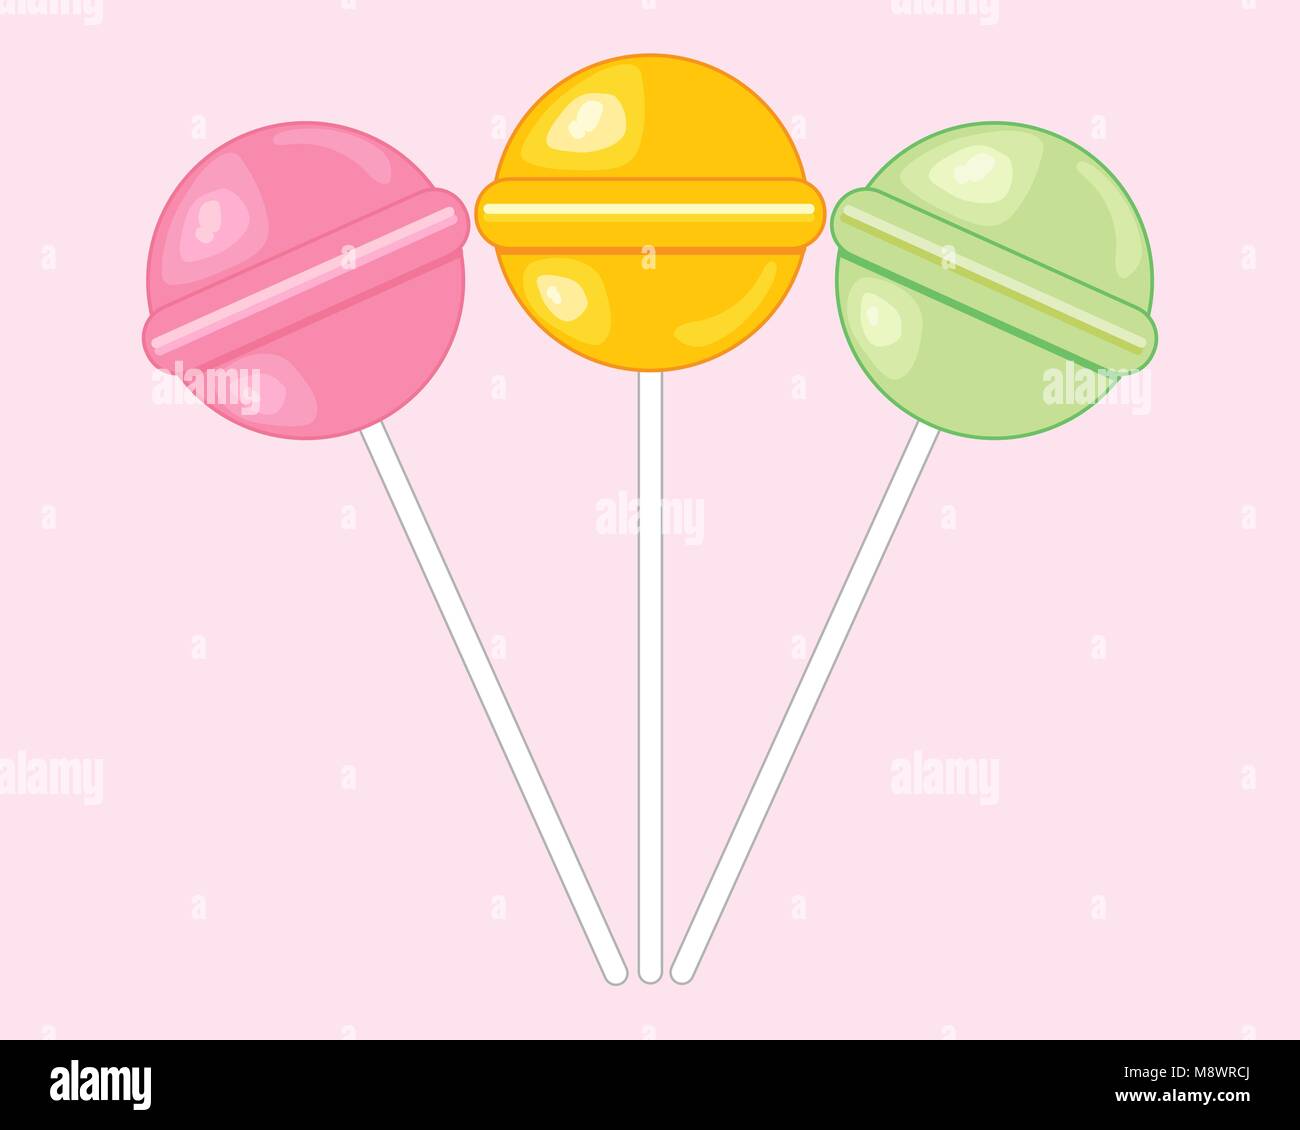 Un vecteur illustration au format eps de sucettes bonbons ronds colorés en jaune et vert, rose sur un fond rose doux Illustration de Vecteur